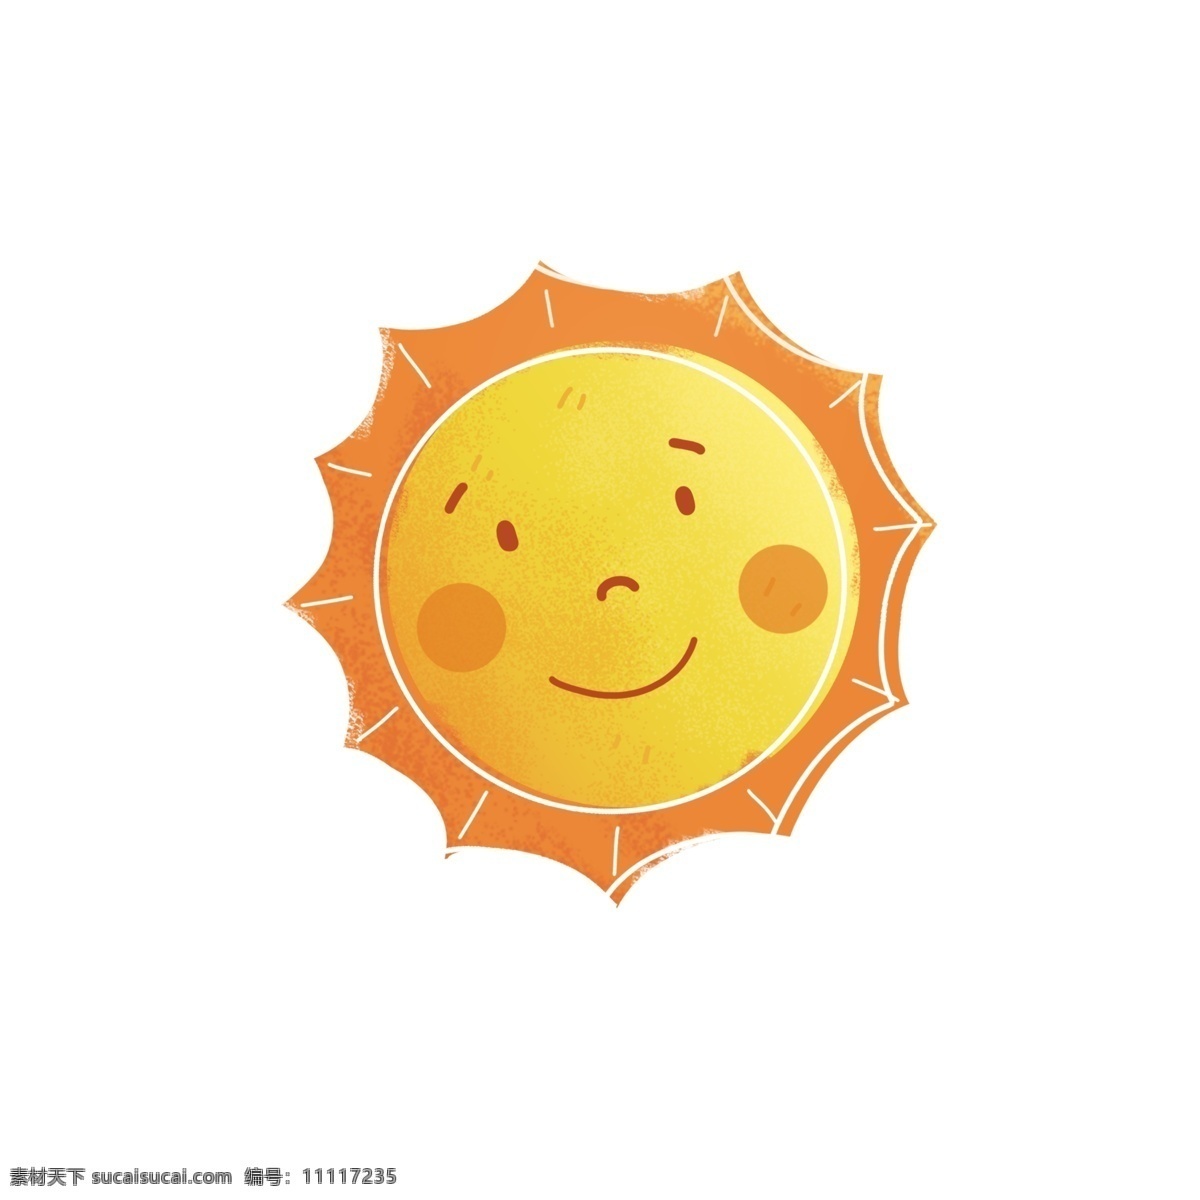 二十四节气 处暑 卡通 太阳 元素 手绘风 卡通太阳